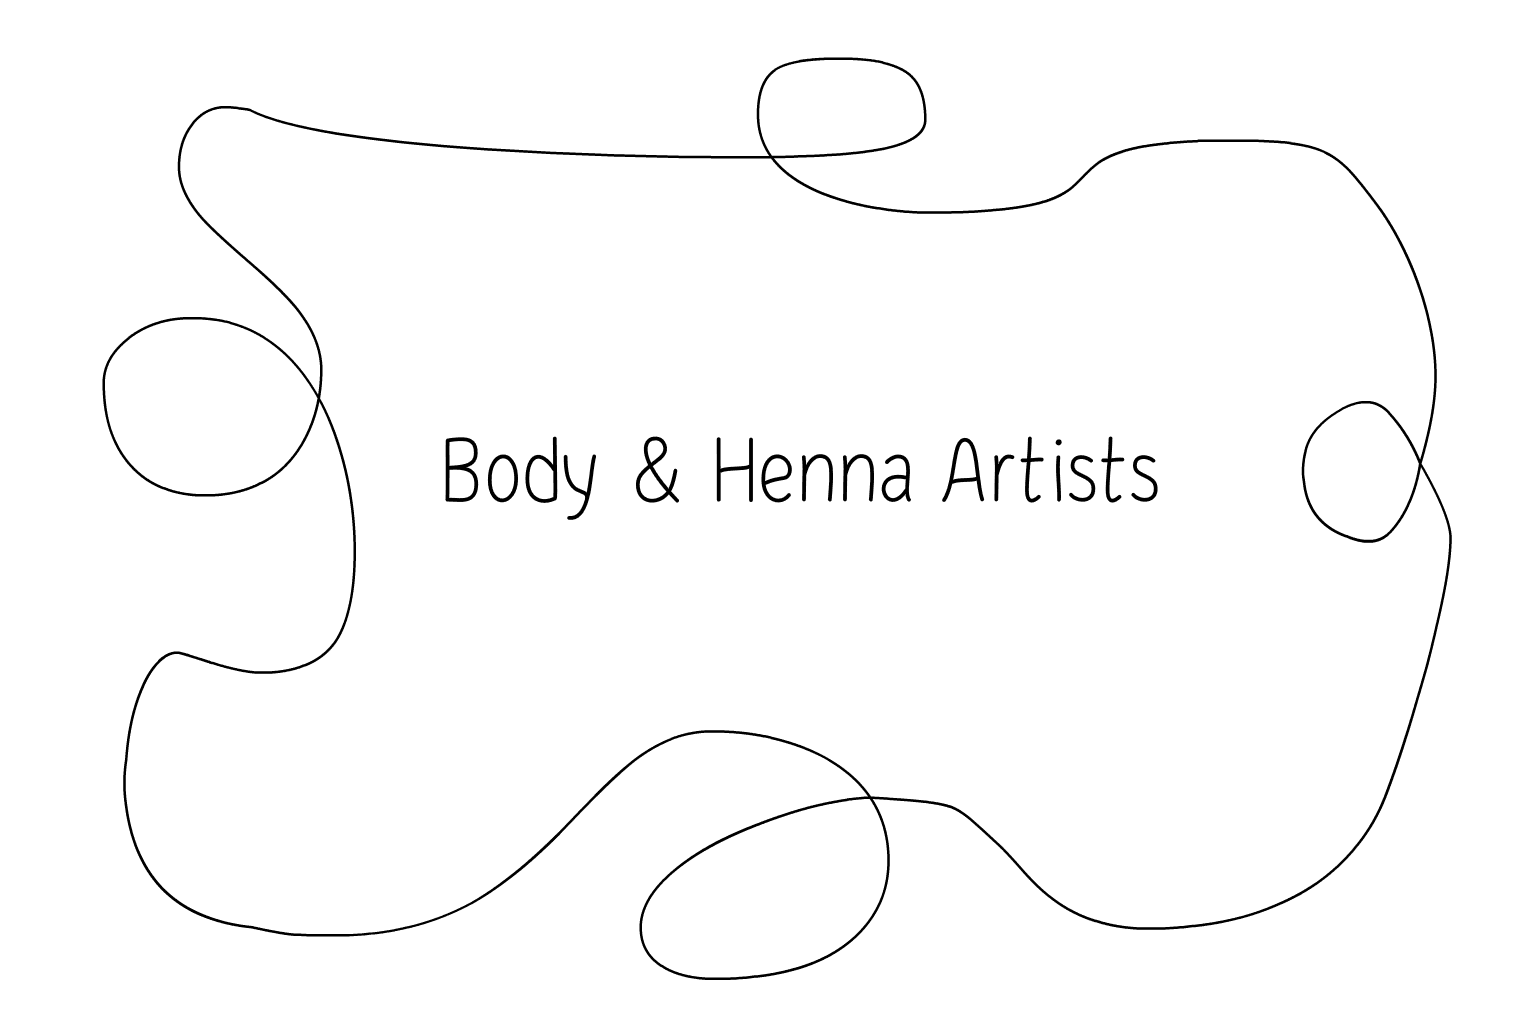 Ilustrație de artiști Henna